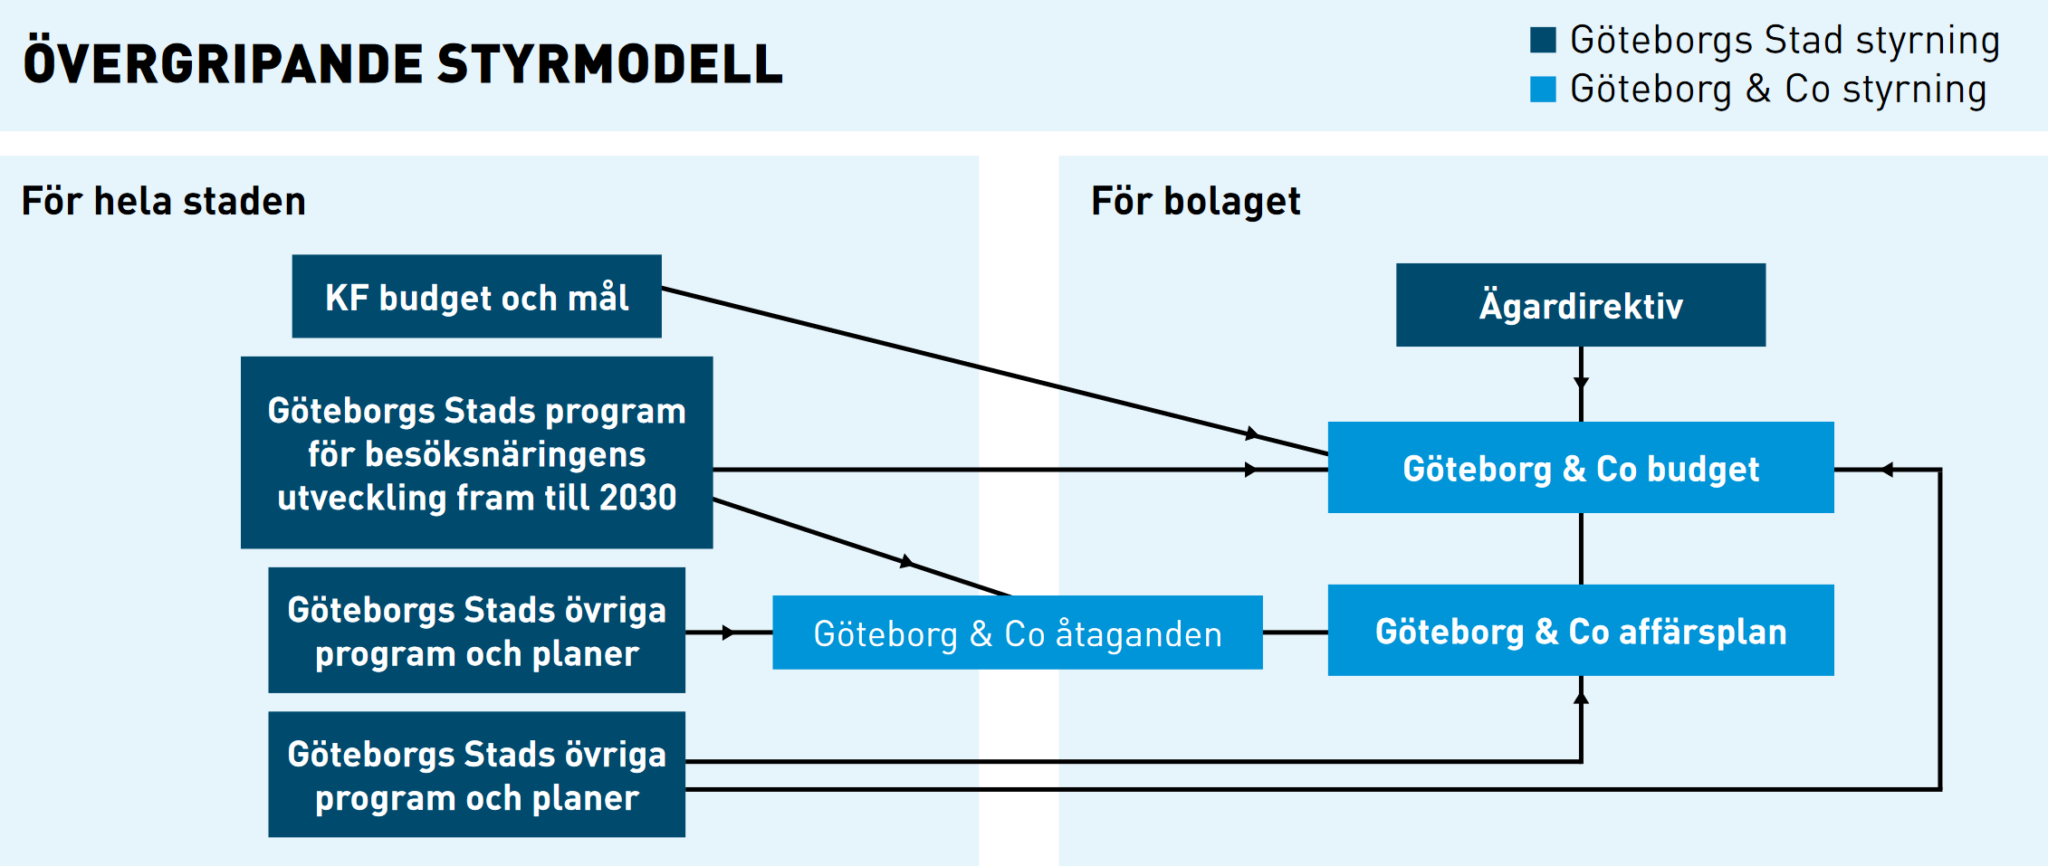 Grafisk modell som visar bolagets övergripande styrmodell.